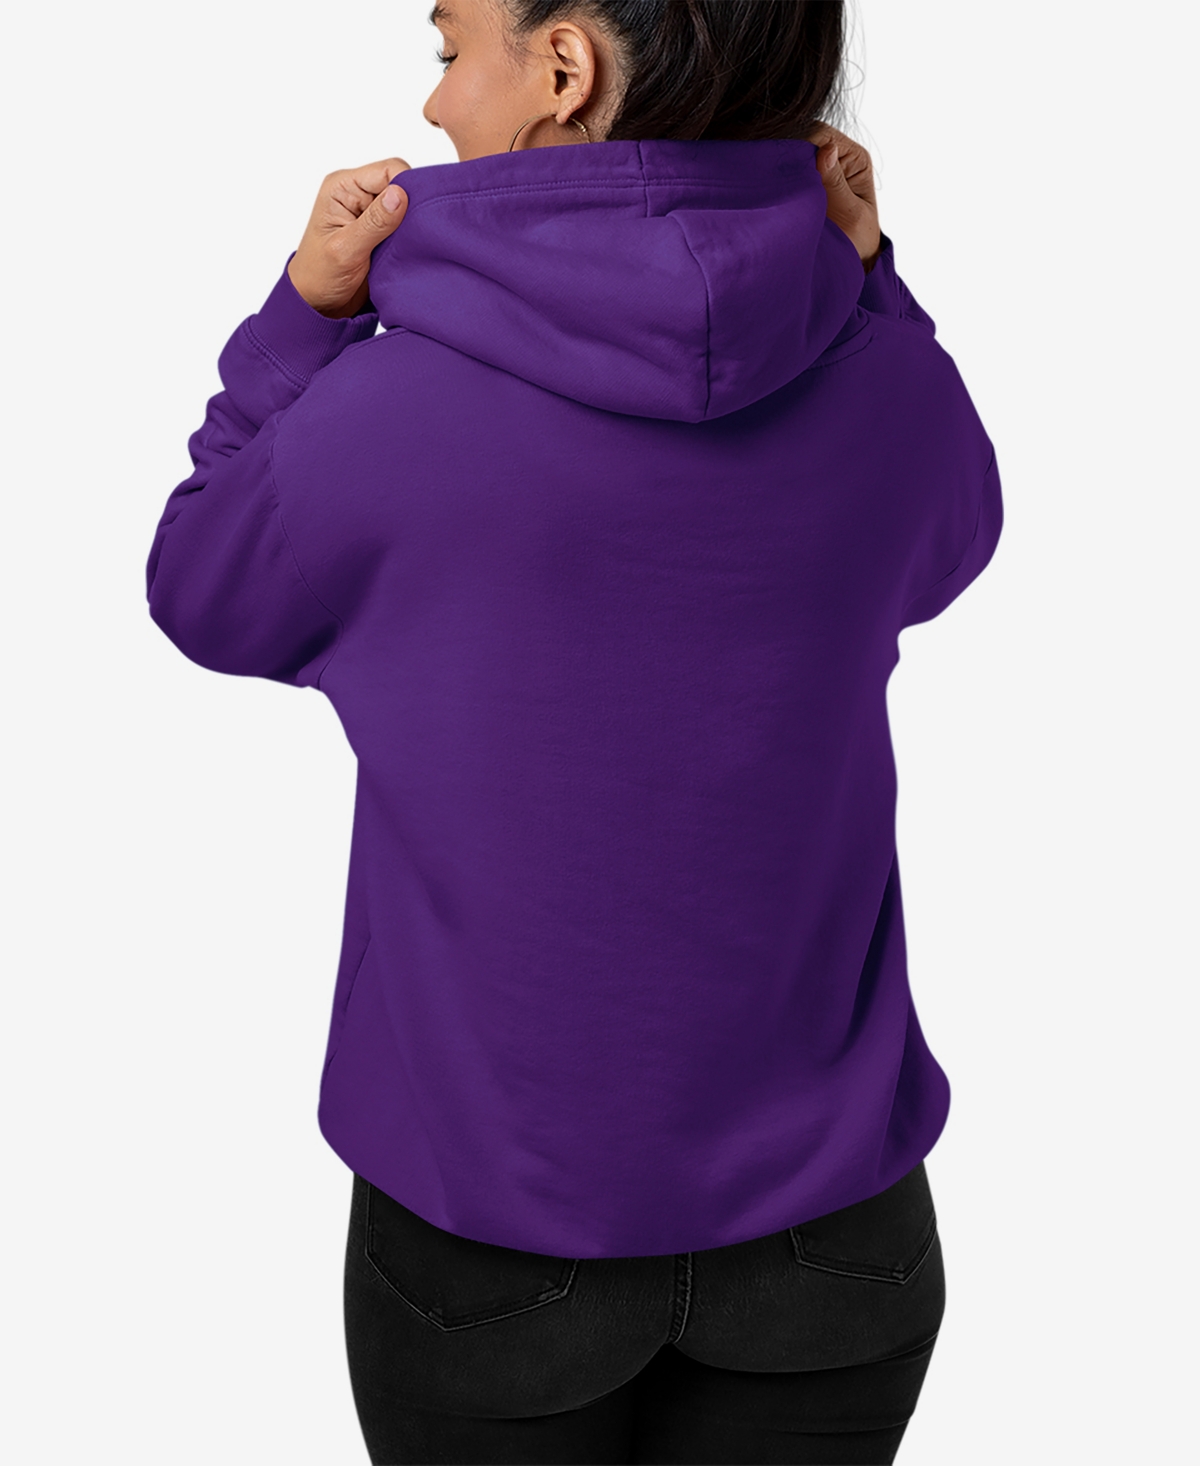 Shop La Pop Art Women's Word Art Girl Horse Hooded Sweatshirt In Purple